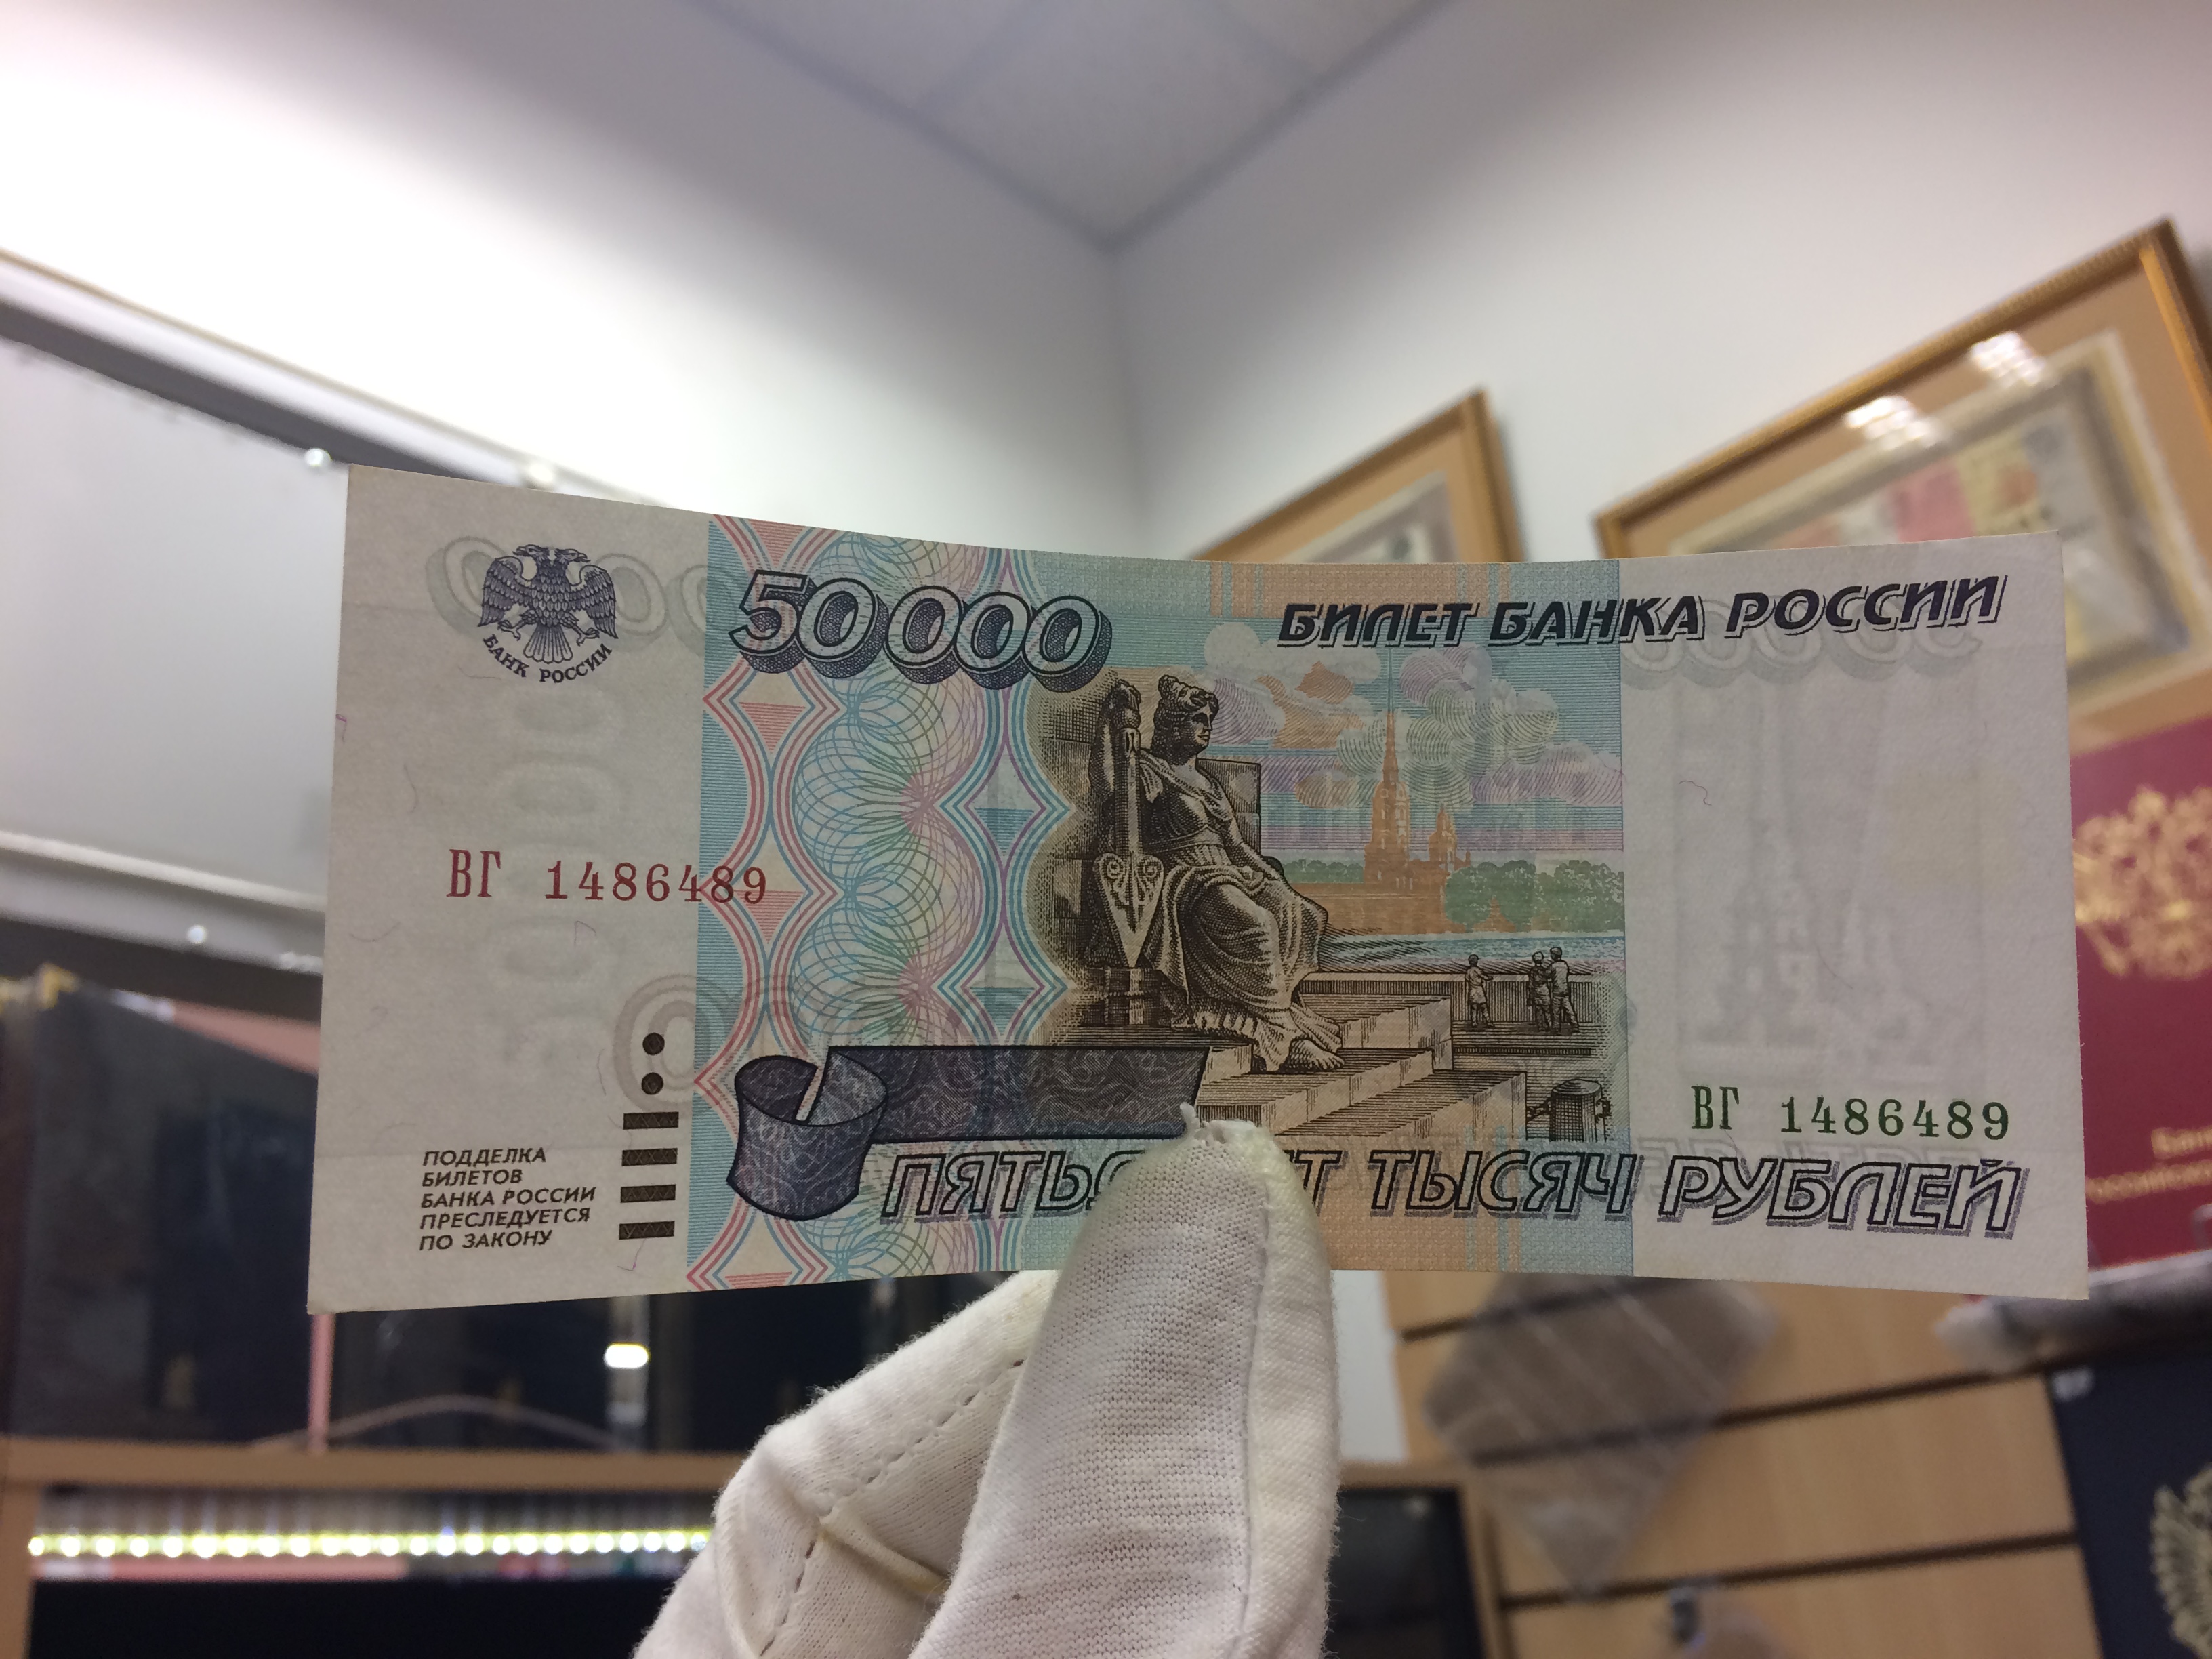 Банк рубил. 50 Рублей банка приколов. 50 Руб билет банка приколов. Билет банка приколов в руке.